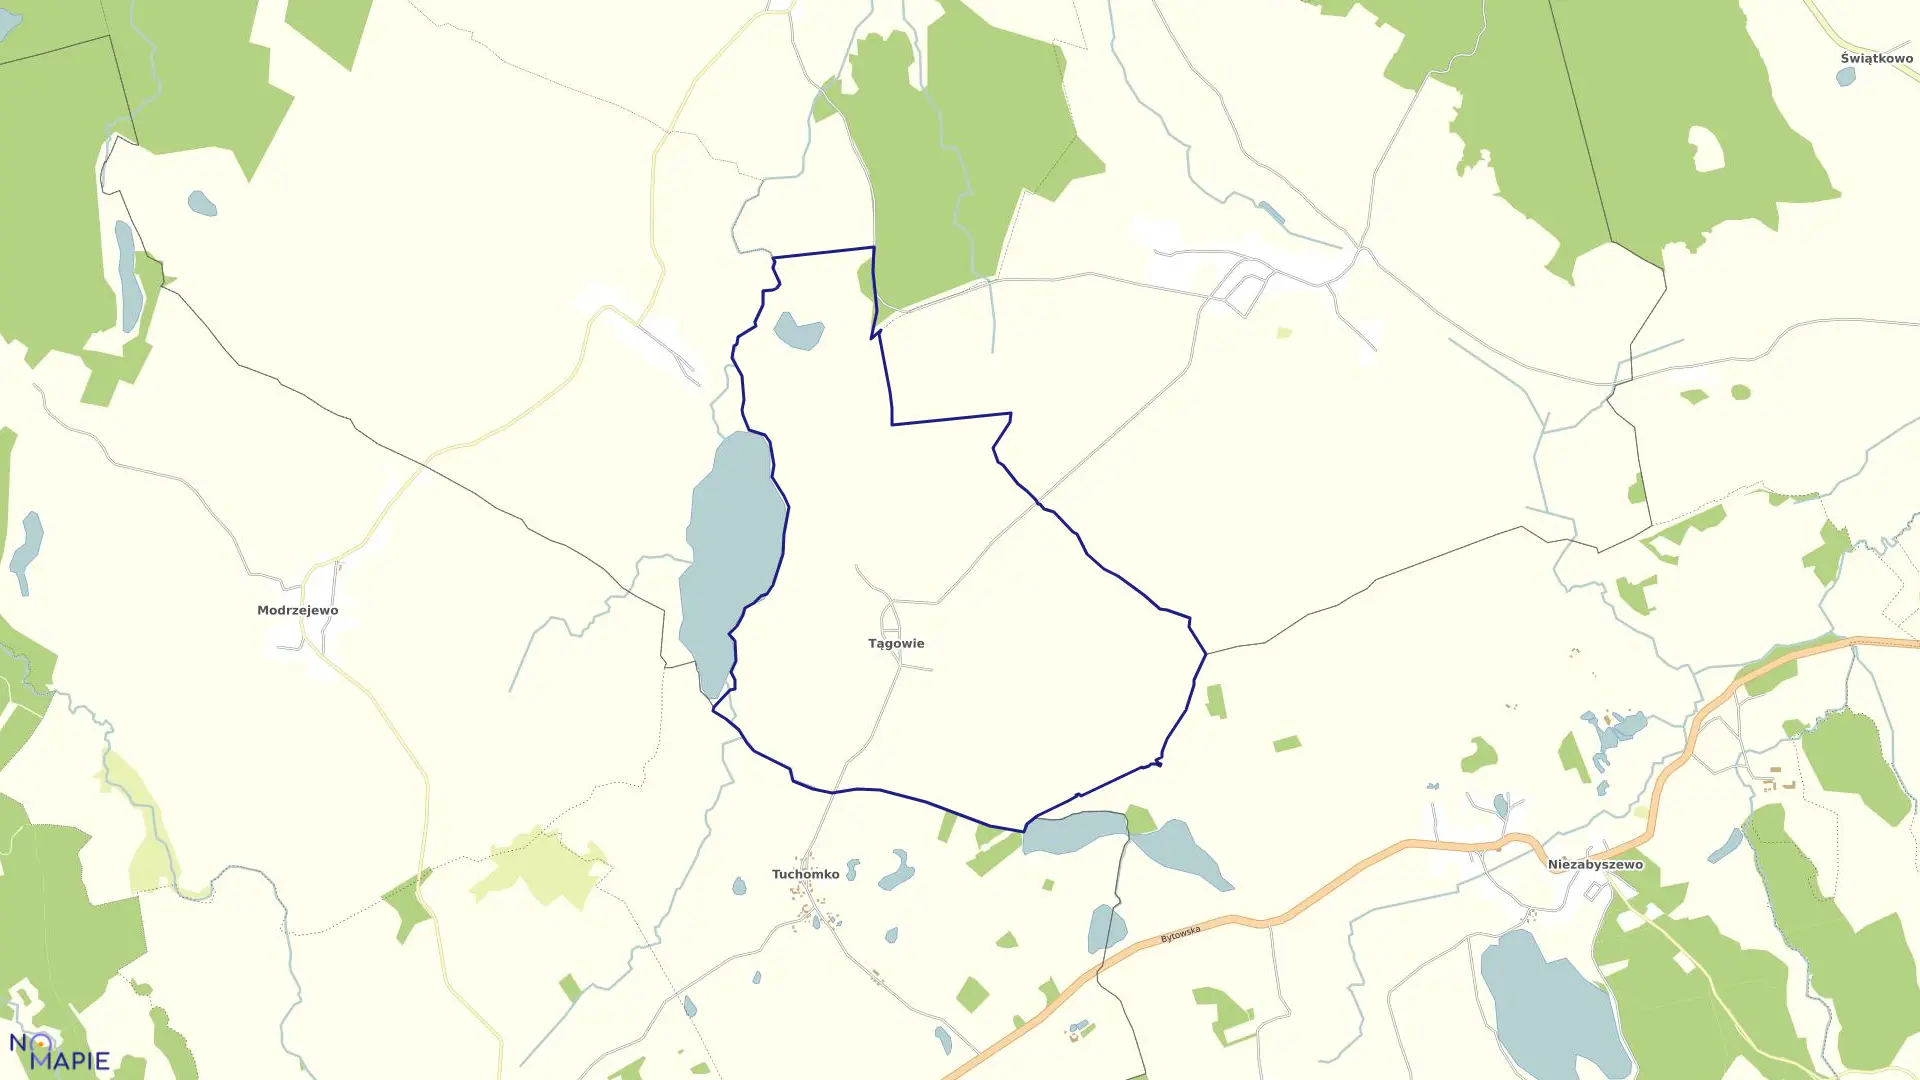 Mapa obrębu Tągowie w gminie Tuchomie